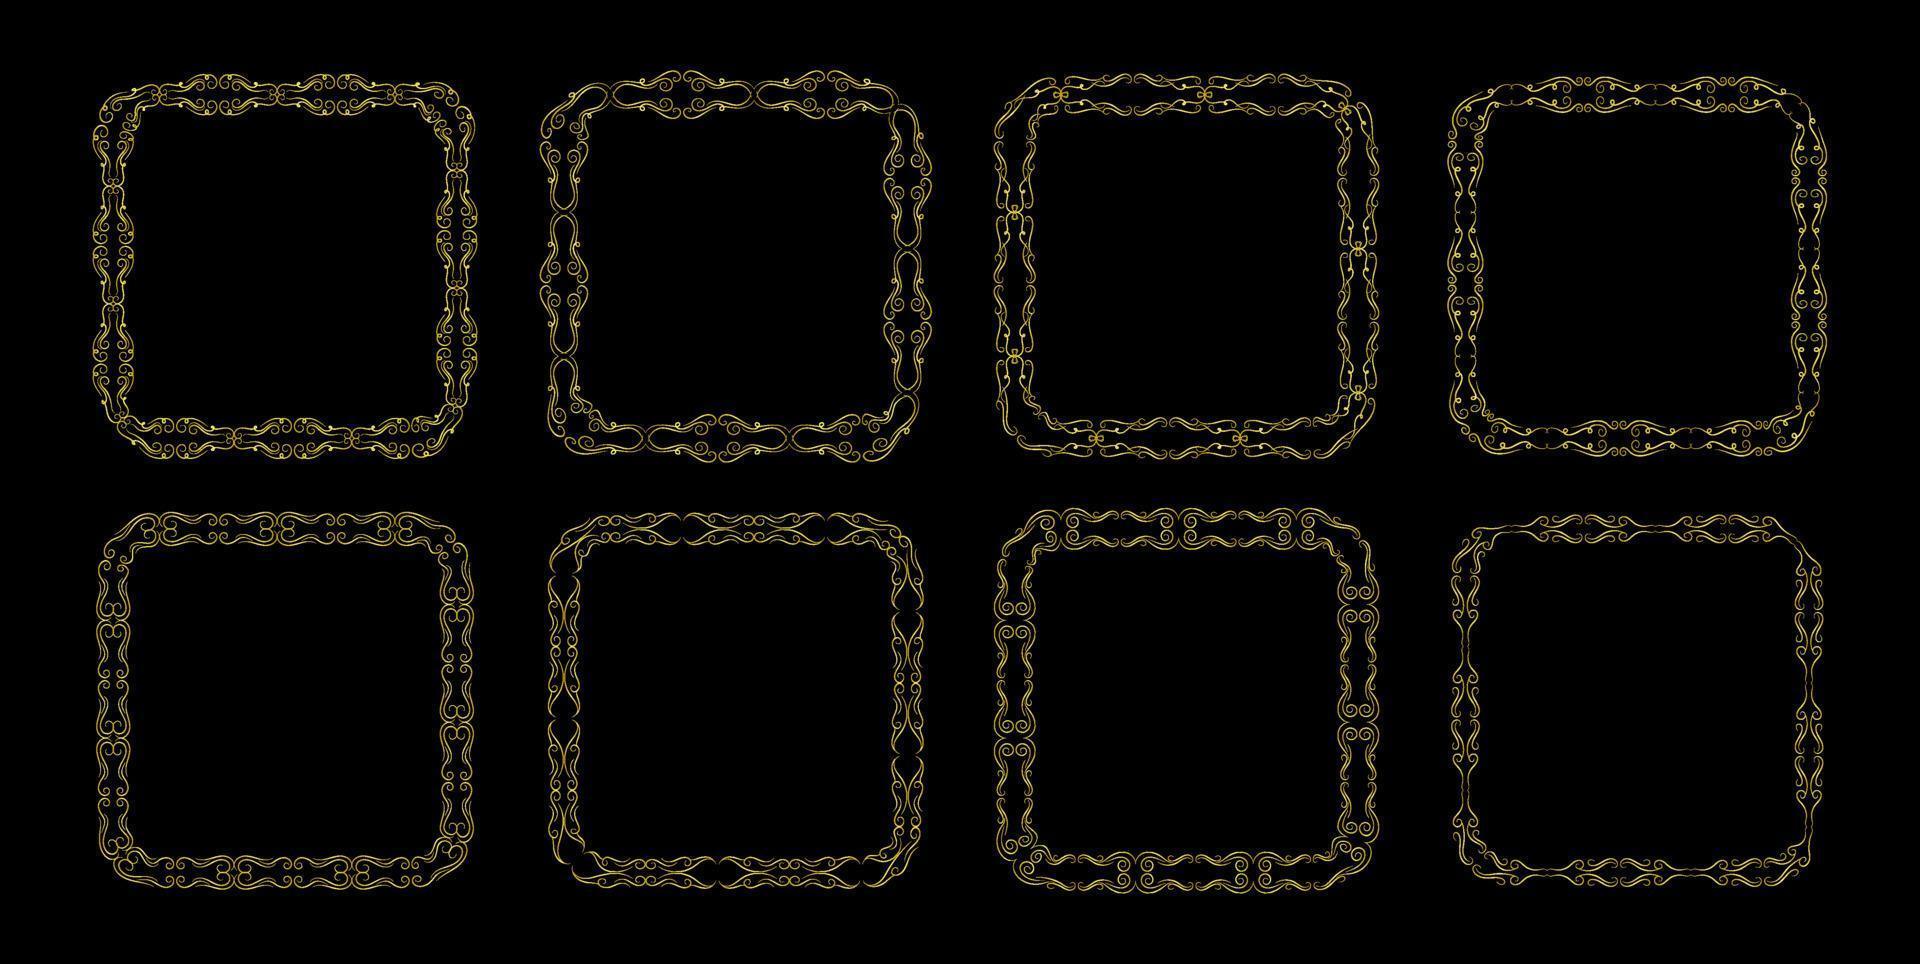 Elements gold frame vector set